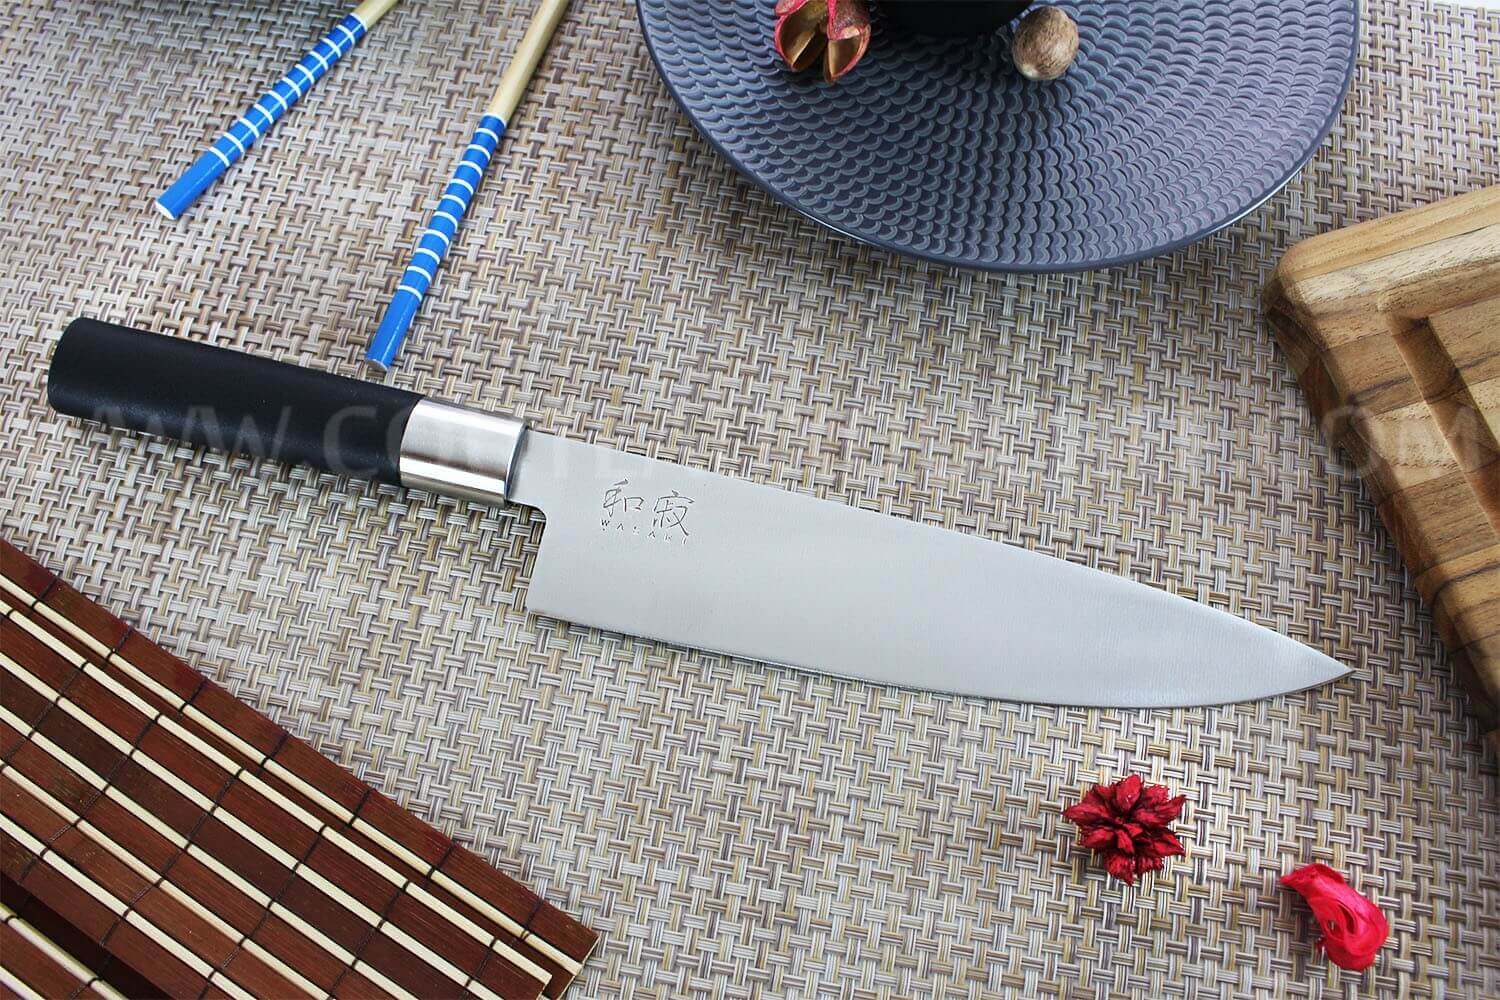 Kai Wasabi Black - 6 Deba Knife – Chef's Arsenal